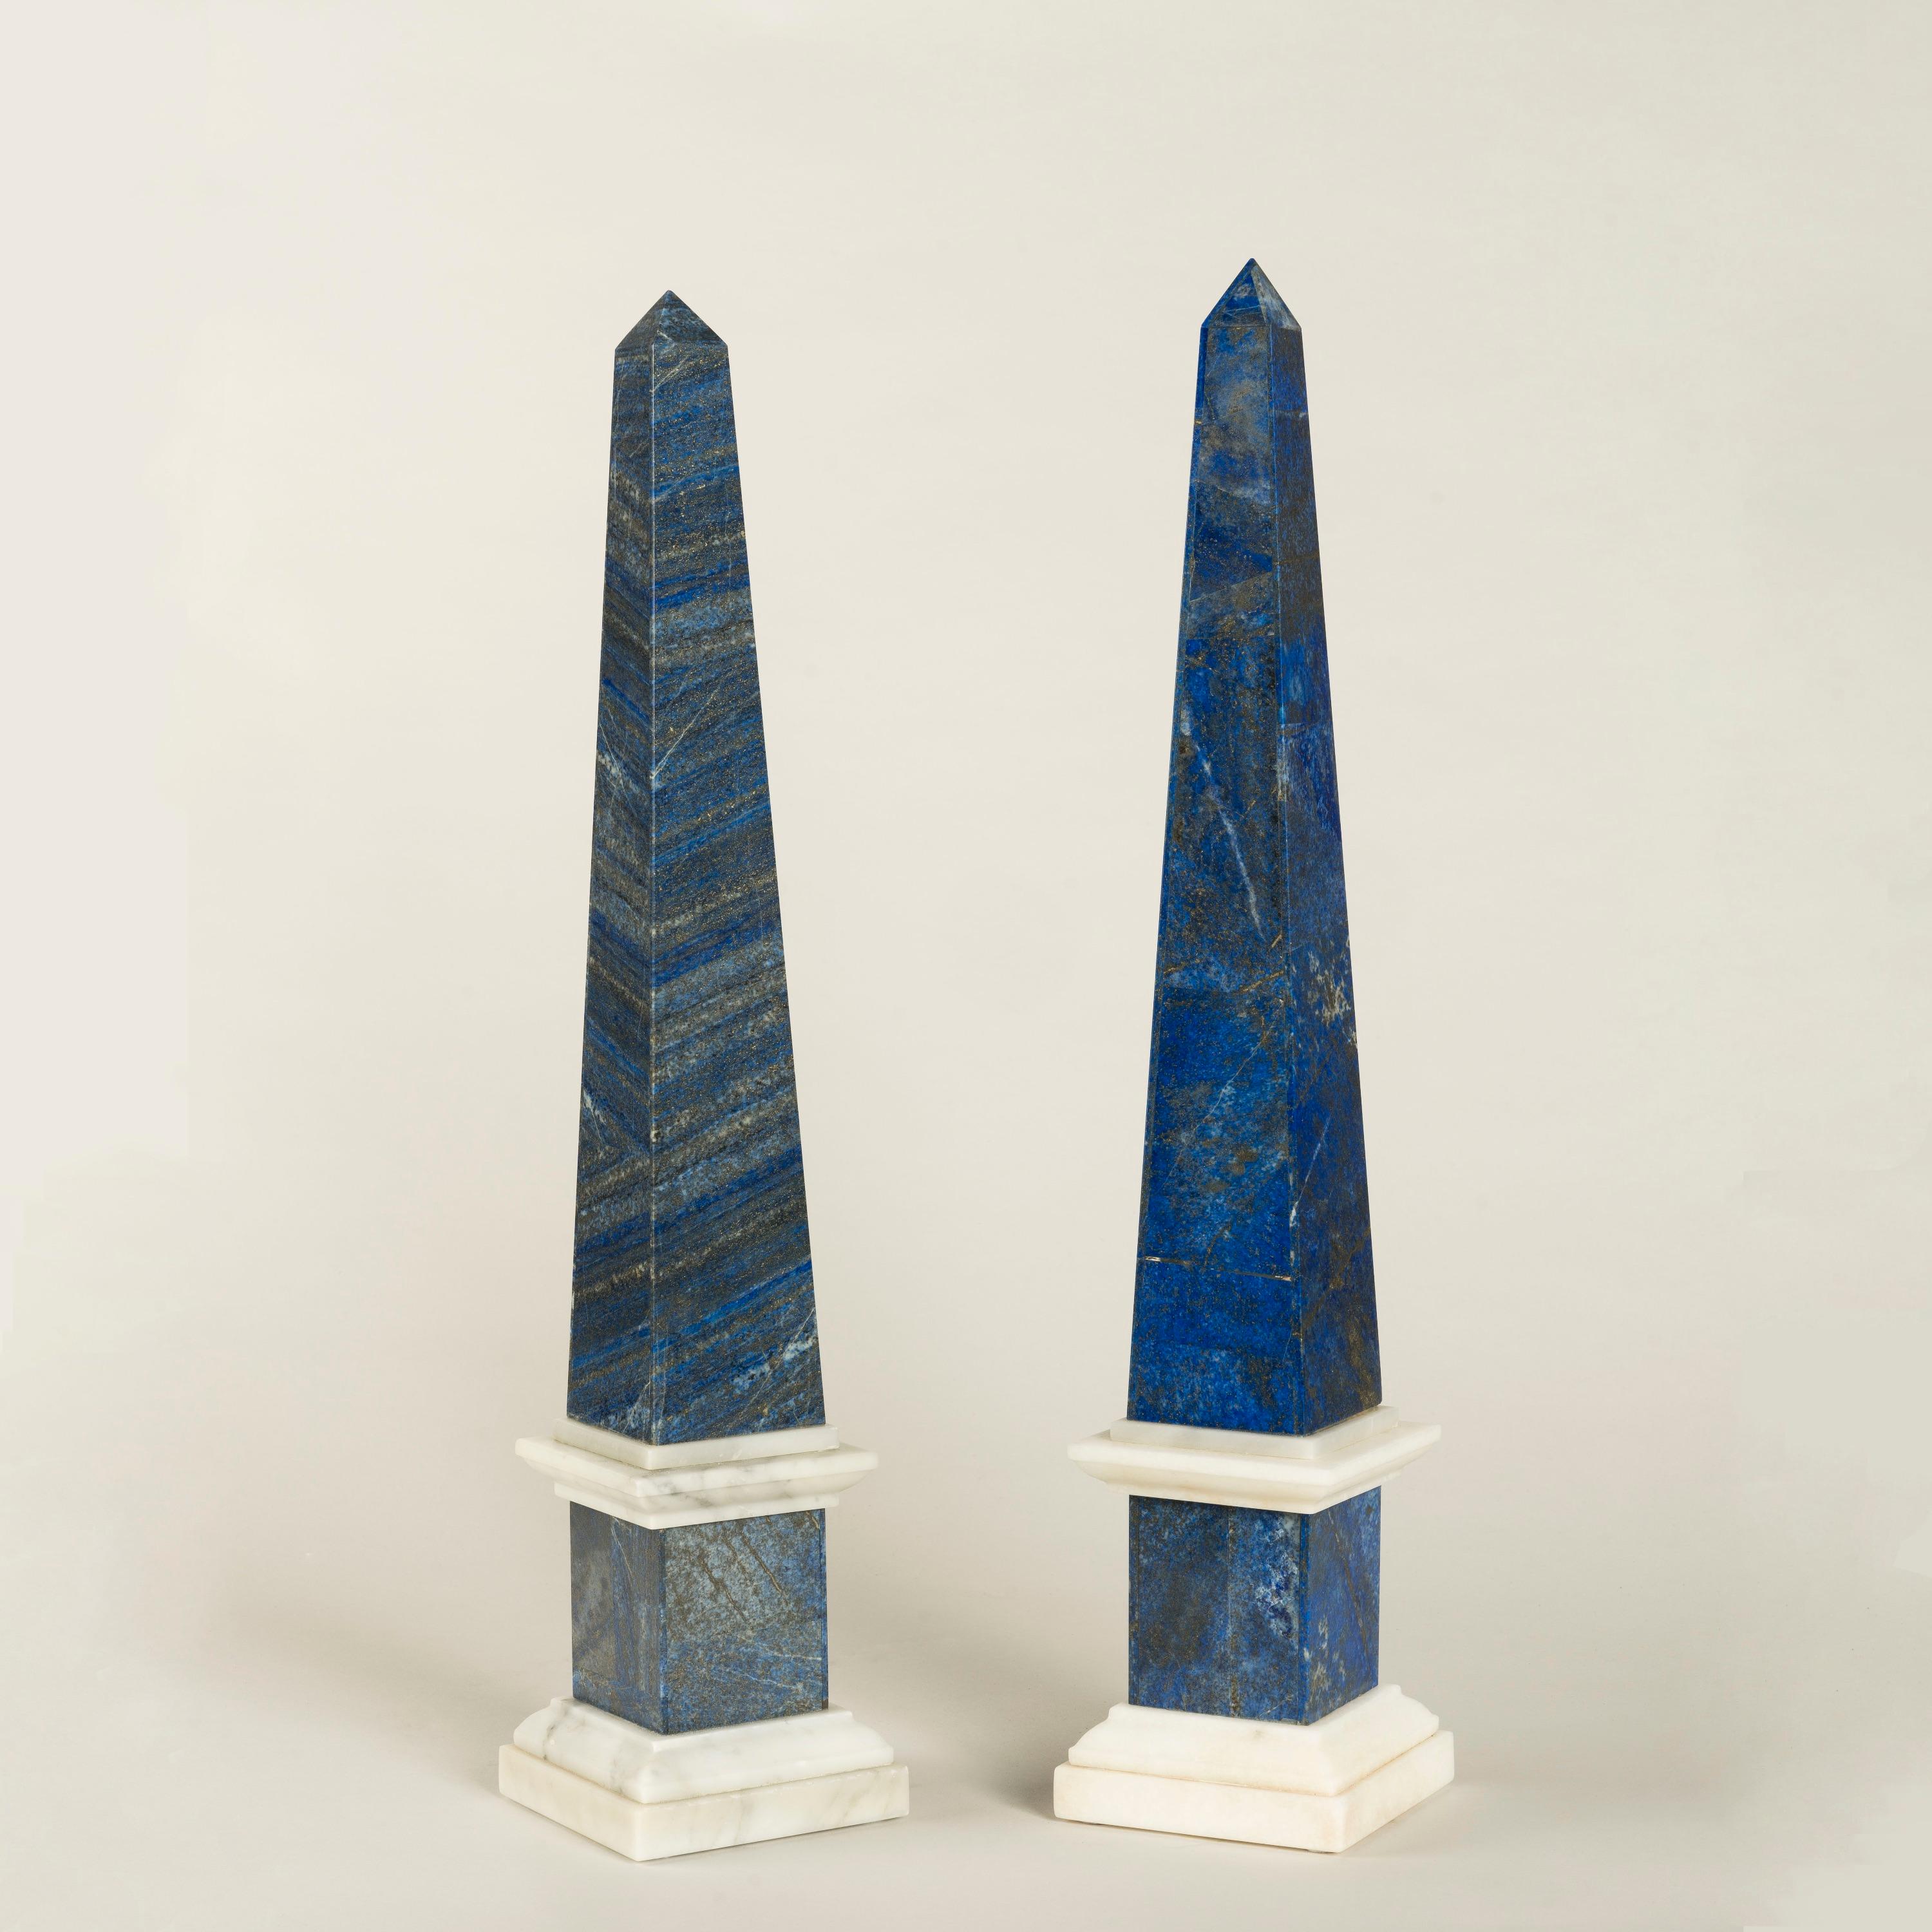 Paire d'obélisques en lapis-lazuli

Plaqué de lapis bleu profond, rare et semi-précieux, admiré pour sa couleur intense, chaque obélisque est doté de bases et de moulures en marbre de Carrare.
Probablement vénitien, vers 1870

Le lapis-lazuli, ainsi